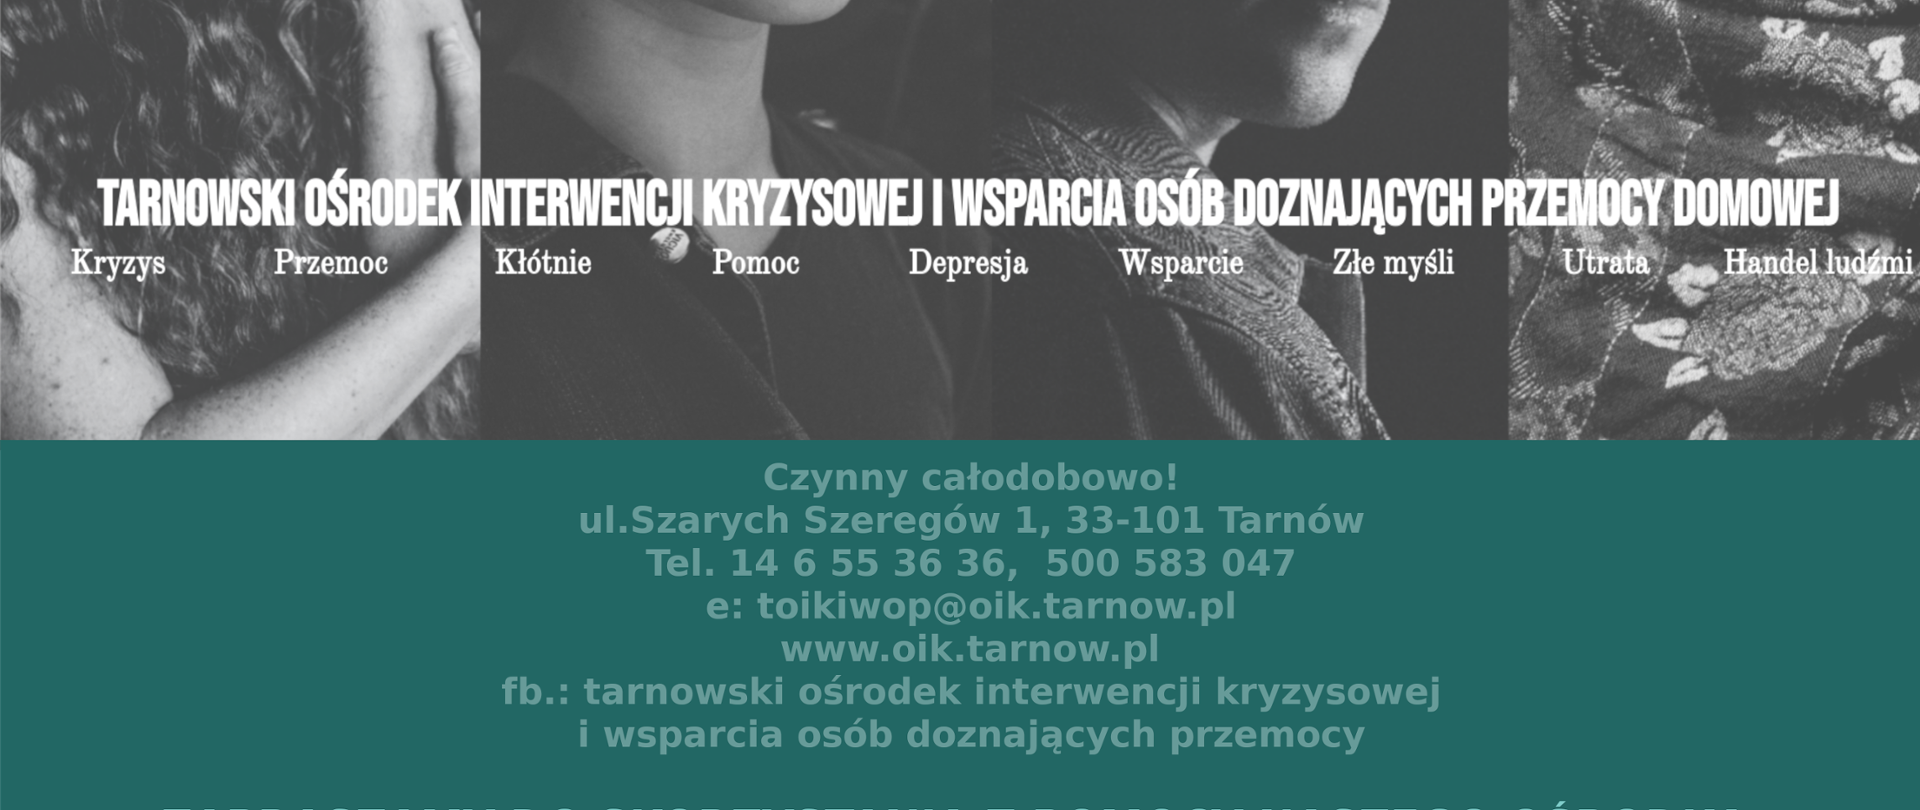 Plakat z informacją o działalności Tarnowskiego Ośrodka Interwencji Kryzysowej i Wsparcia Osób Doznających Przemocy Domowej